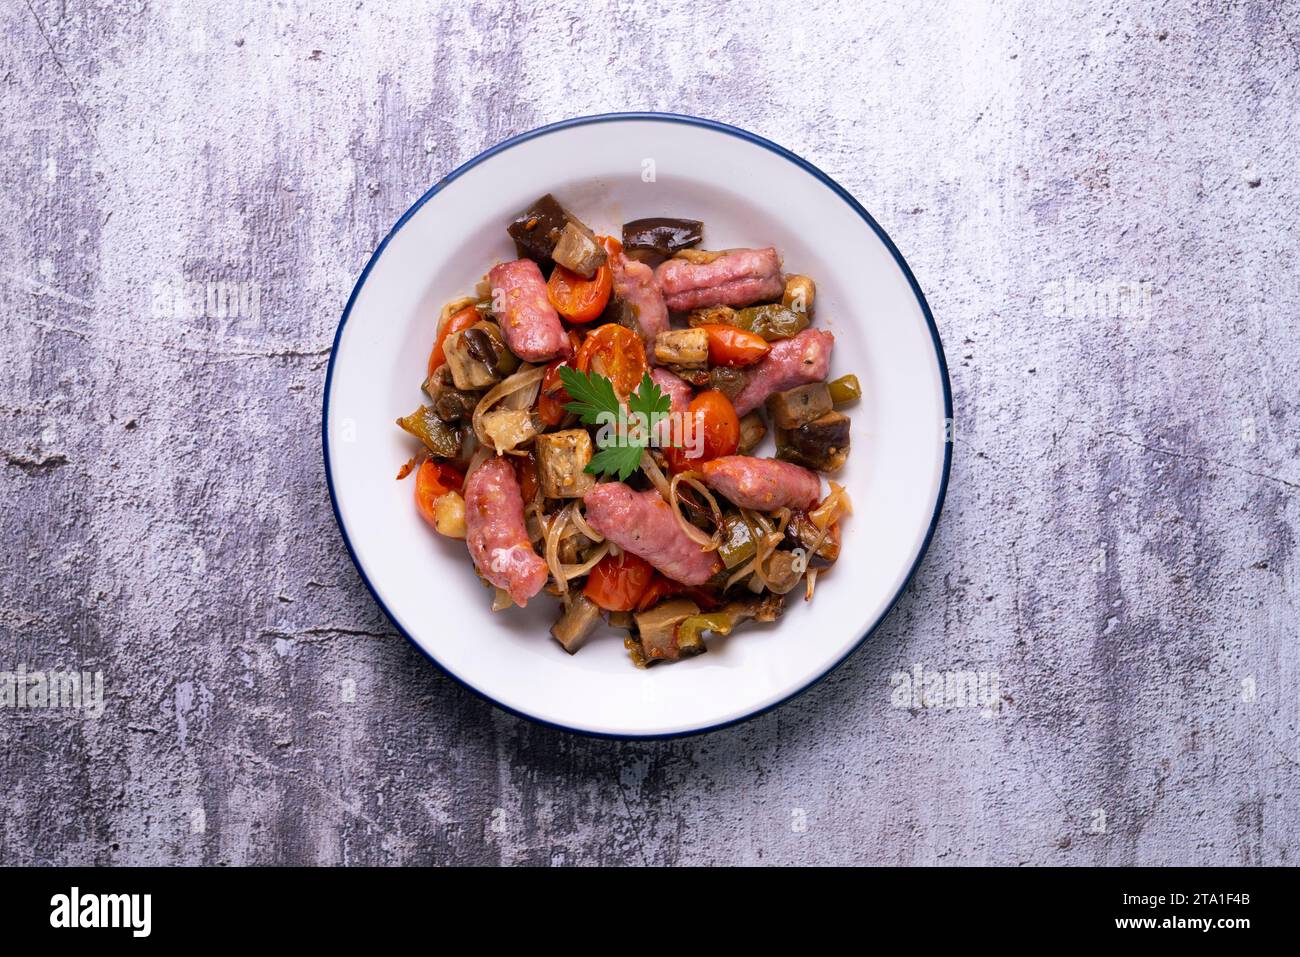 Saucisses de porc ibérique sautées avec des légumes. Tapa espagnol. Banque D'Images